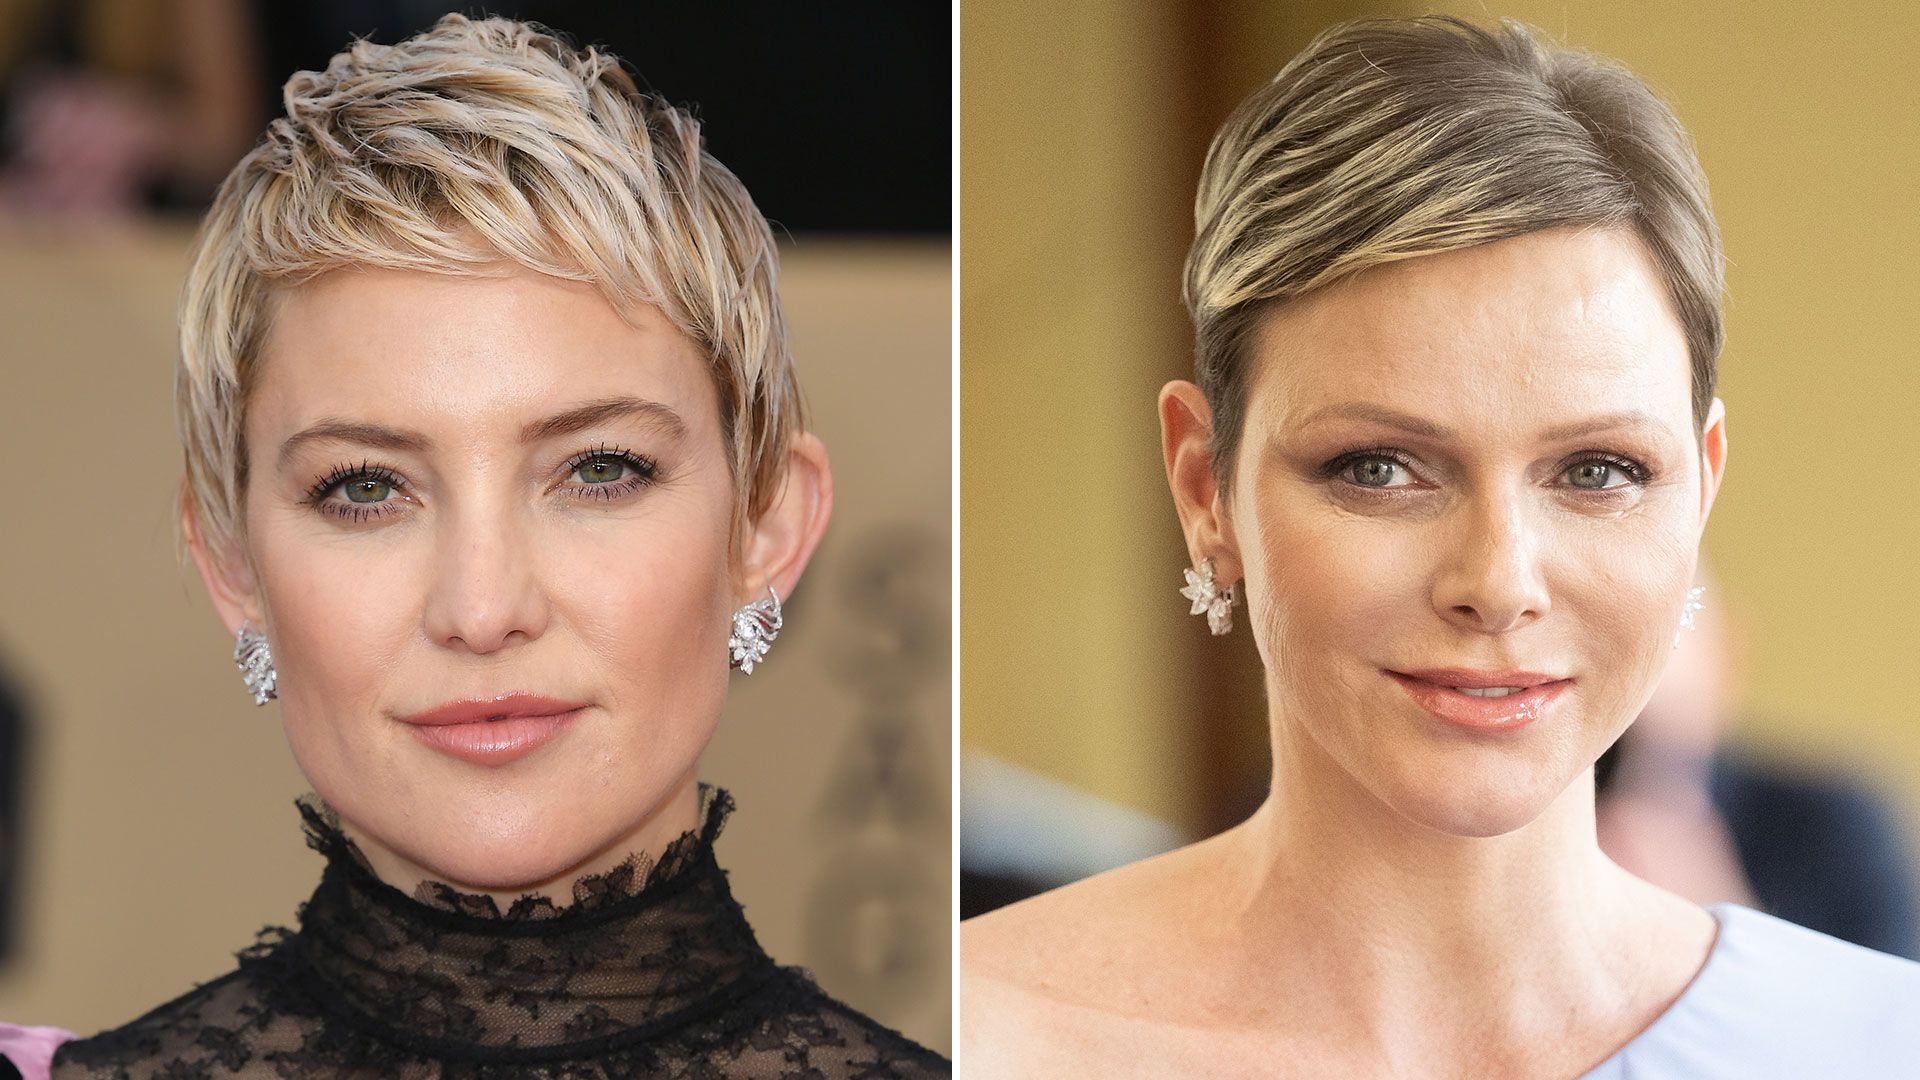 Jennifer Hudson Get Super-Short Hair, Celebrity Hair Changes